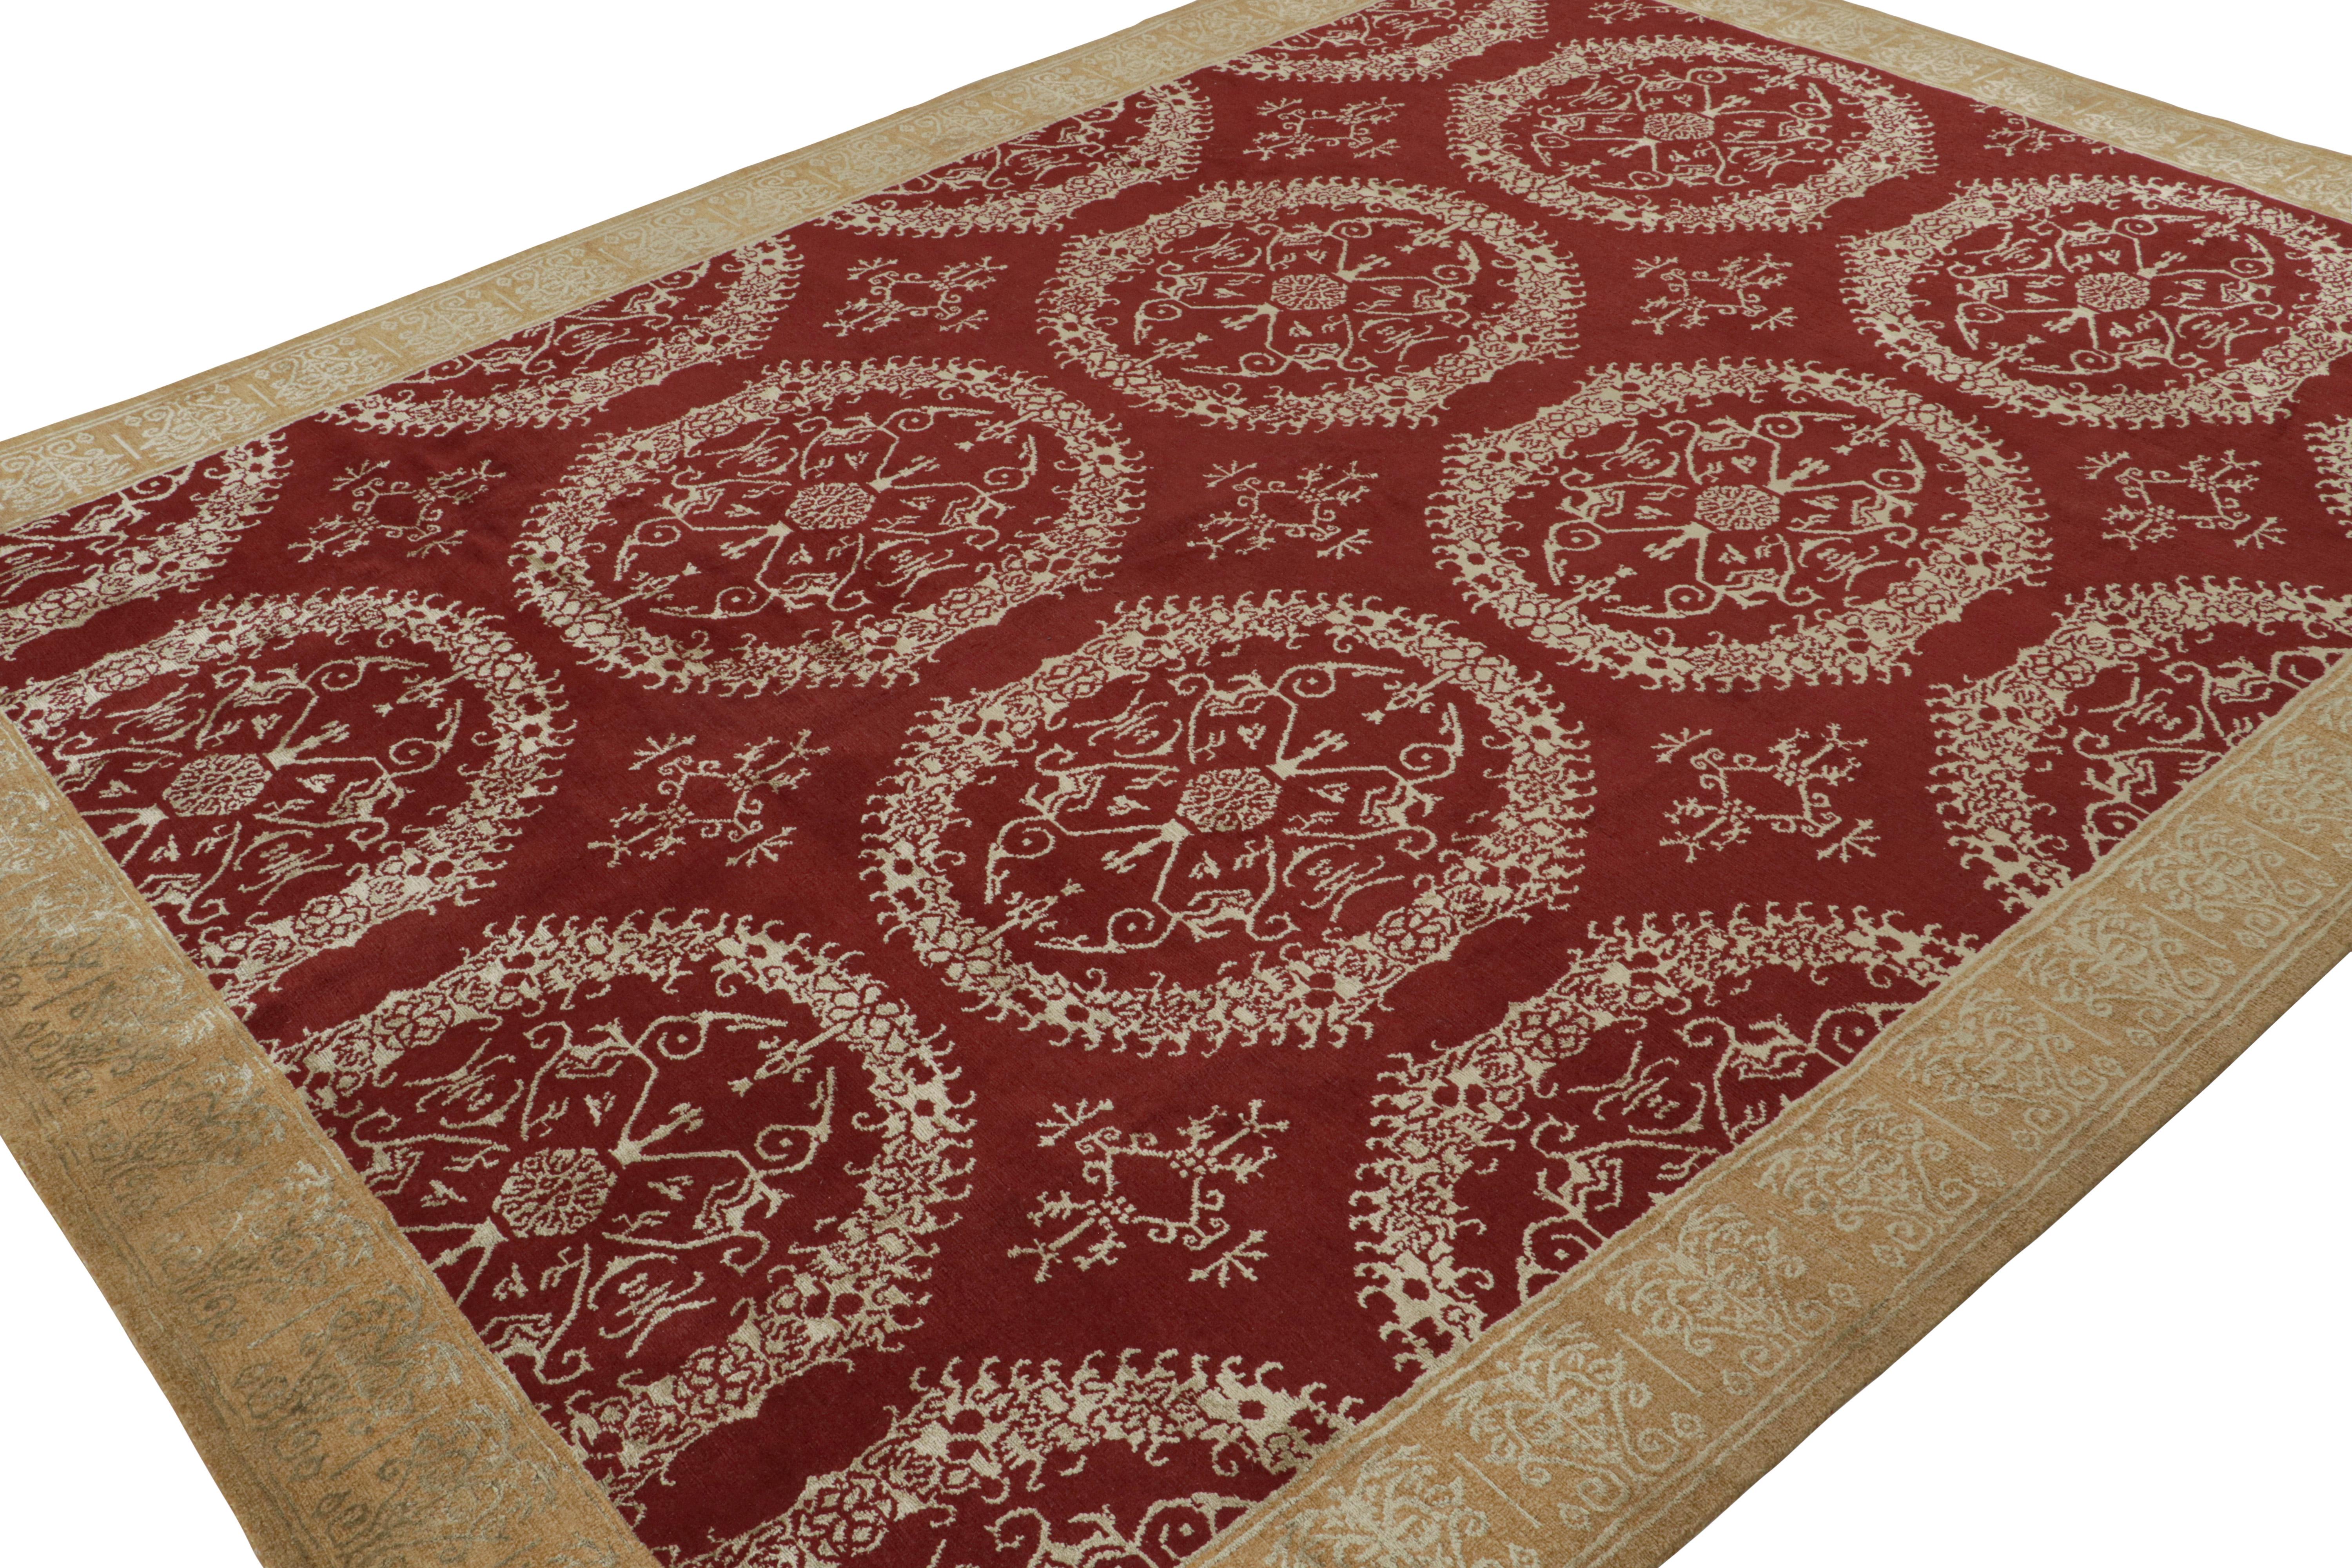 Dieser 8x10 große zeitgenössische Teppich aus luxuriöser Wolle-Seide-Mischung ist eine Neuheit in der europäischen Teppichkollektion von Rug & Kilim und wurde von Hand gewebt. Diese Ergänzung der 